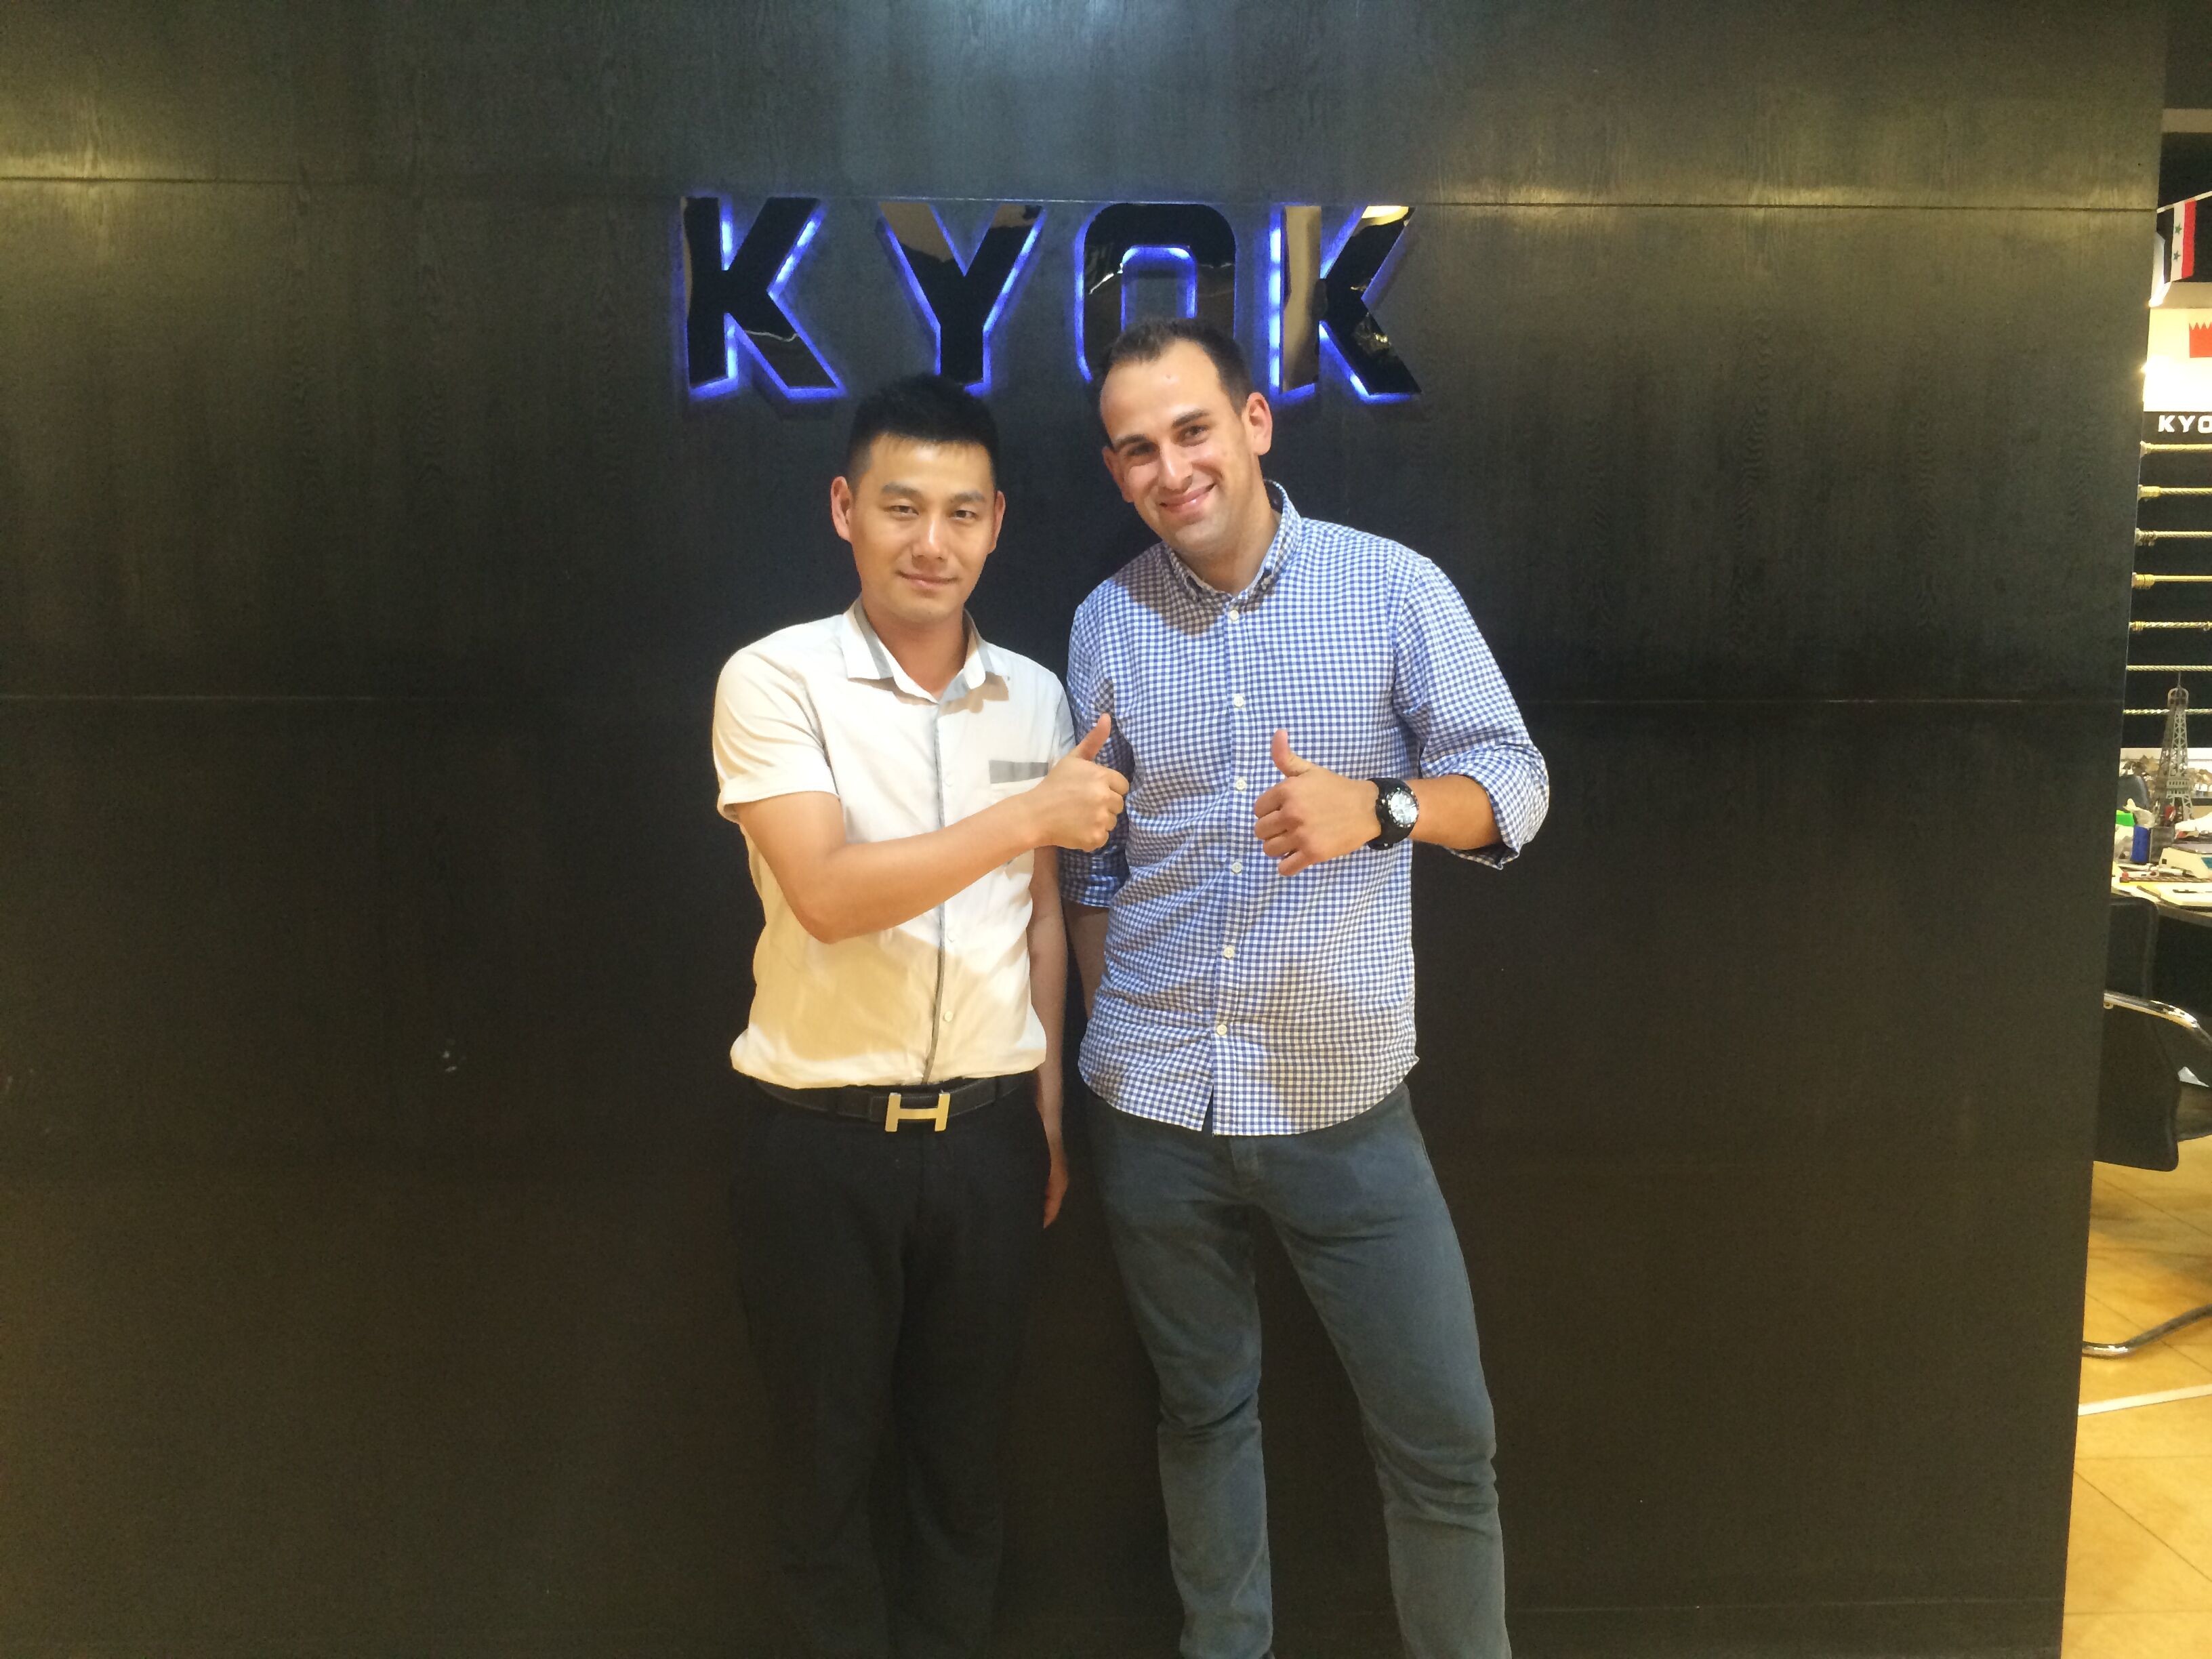 mais recente caso da empresa sobre O cliente espanhol visitou KYOK